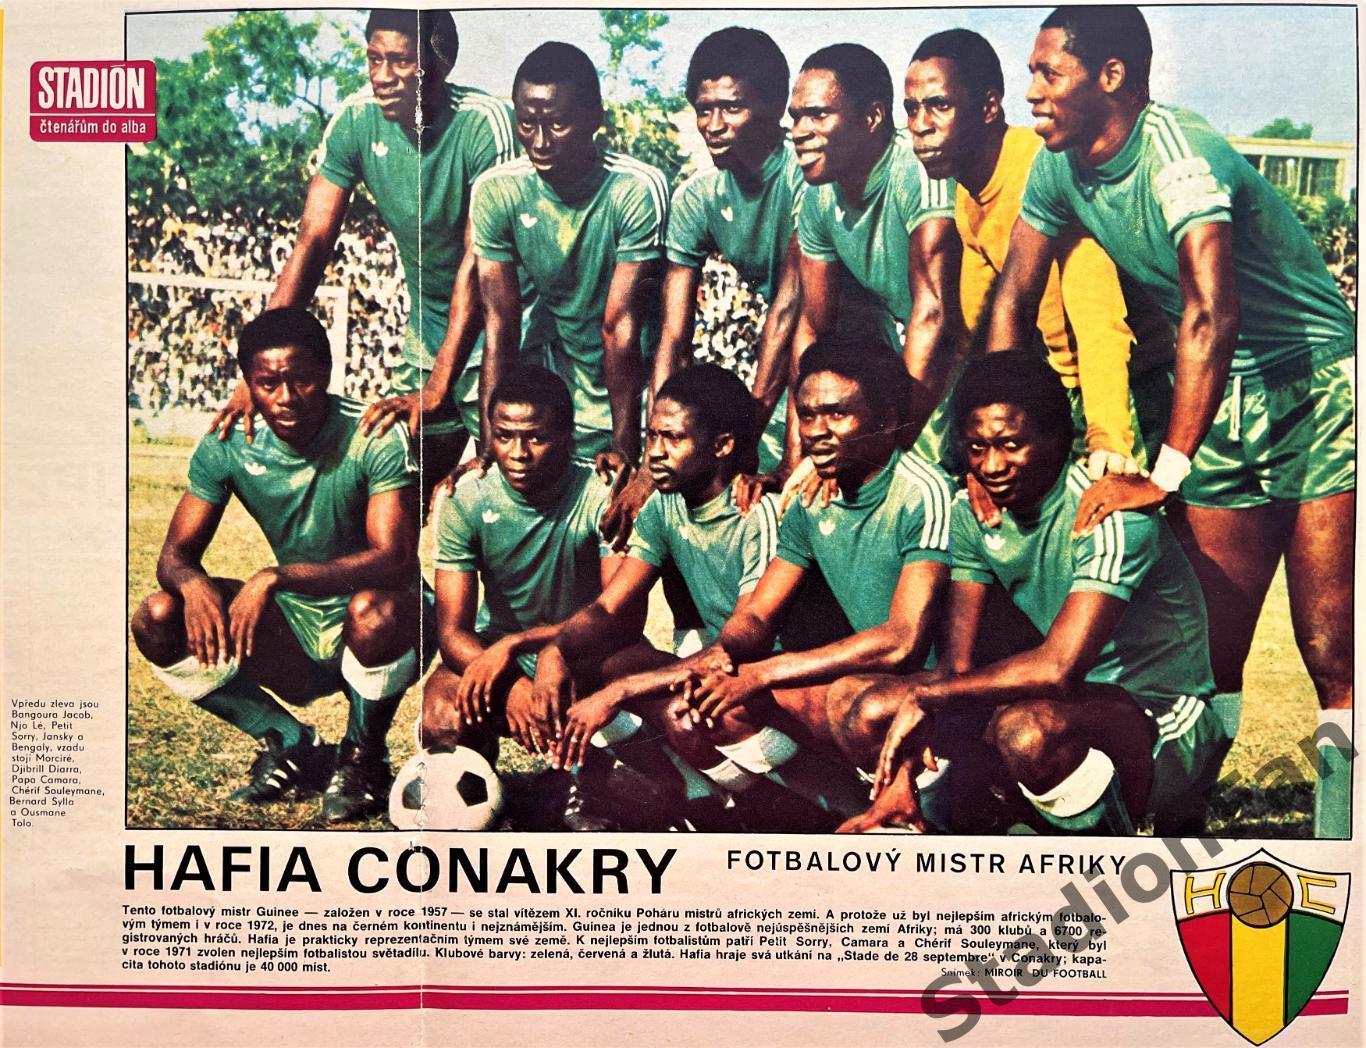 Постер из журнала Стадион (Stadion) - Hafia Conakry, 1976.